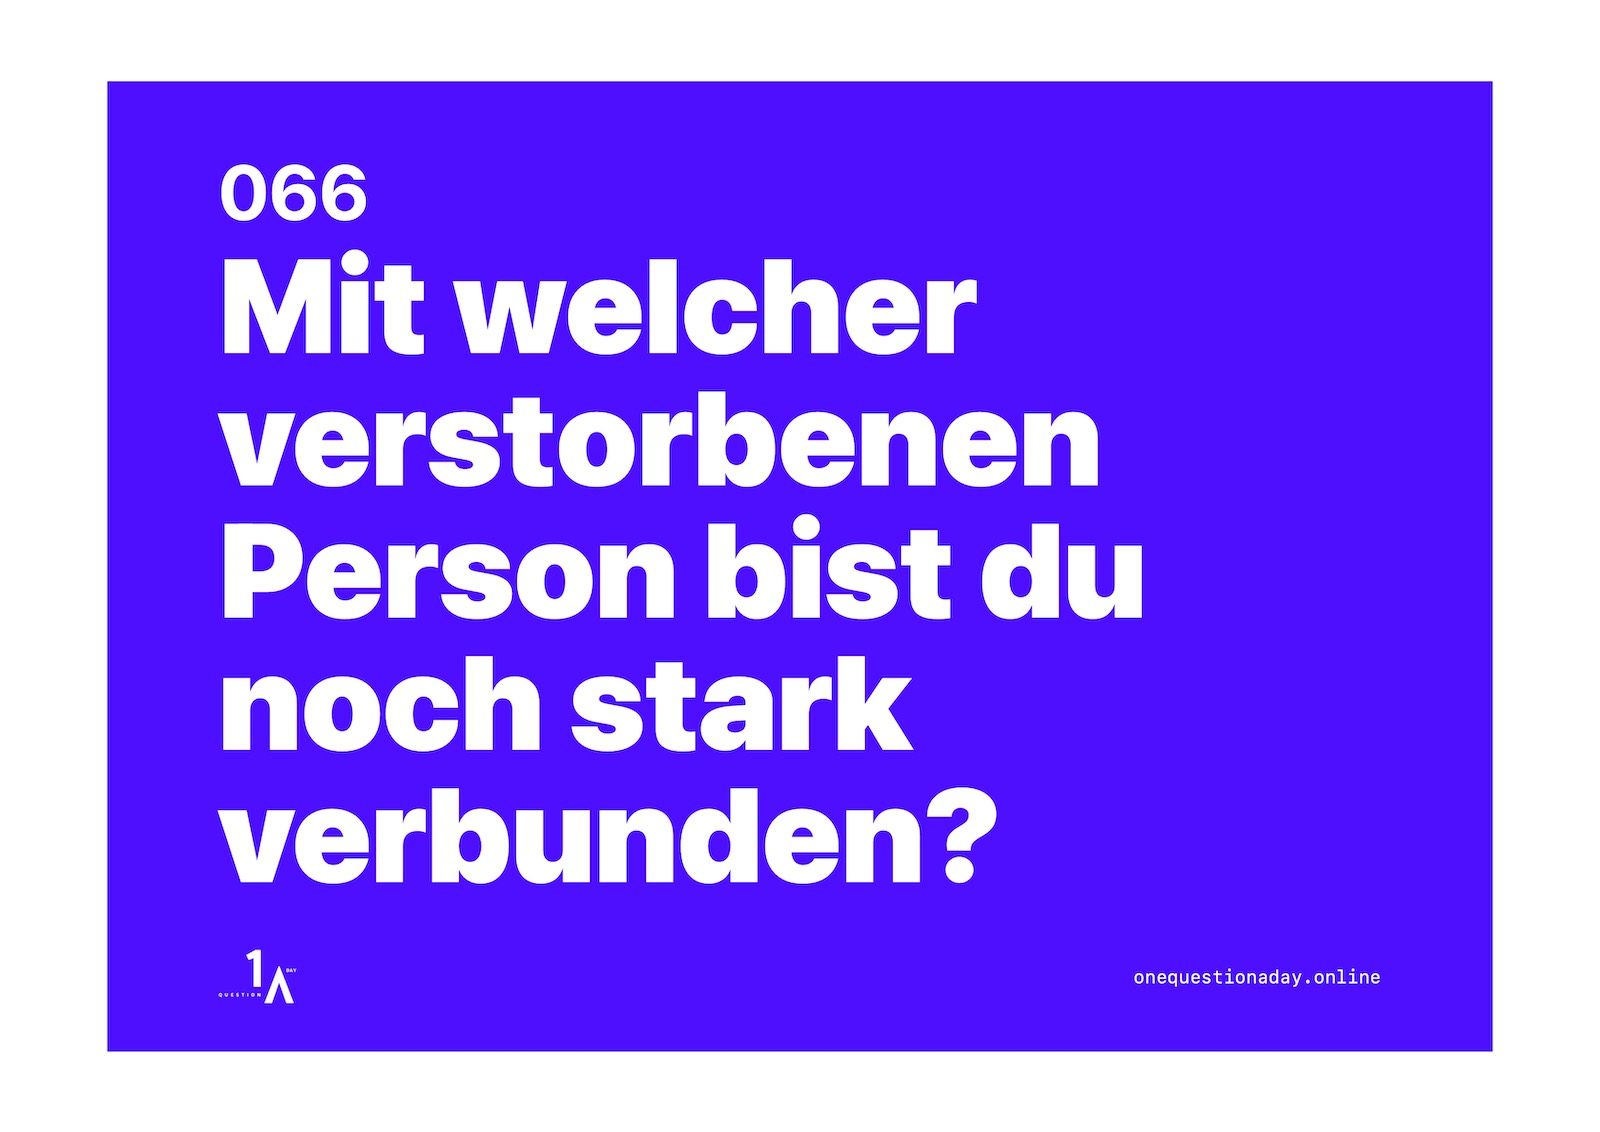 Das Bild ist ein farbiges Poster, auf dem in weisser Schrift die Frage steht: "Mit welcher verstorbenen Person bist du noch stark verbunden?"